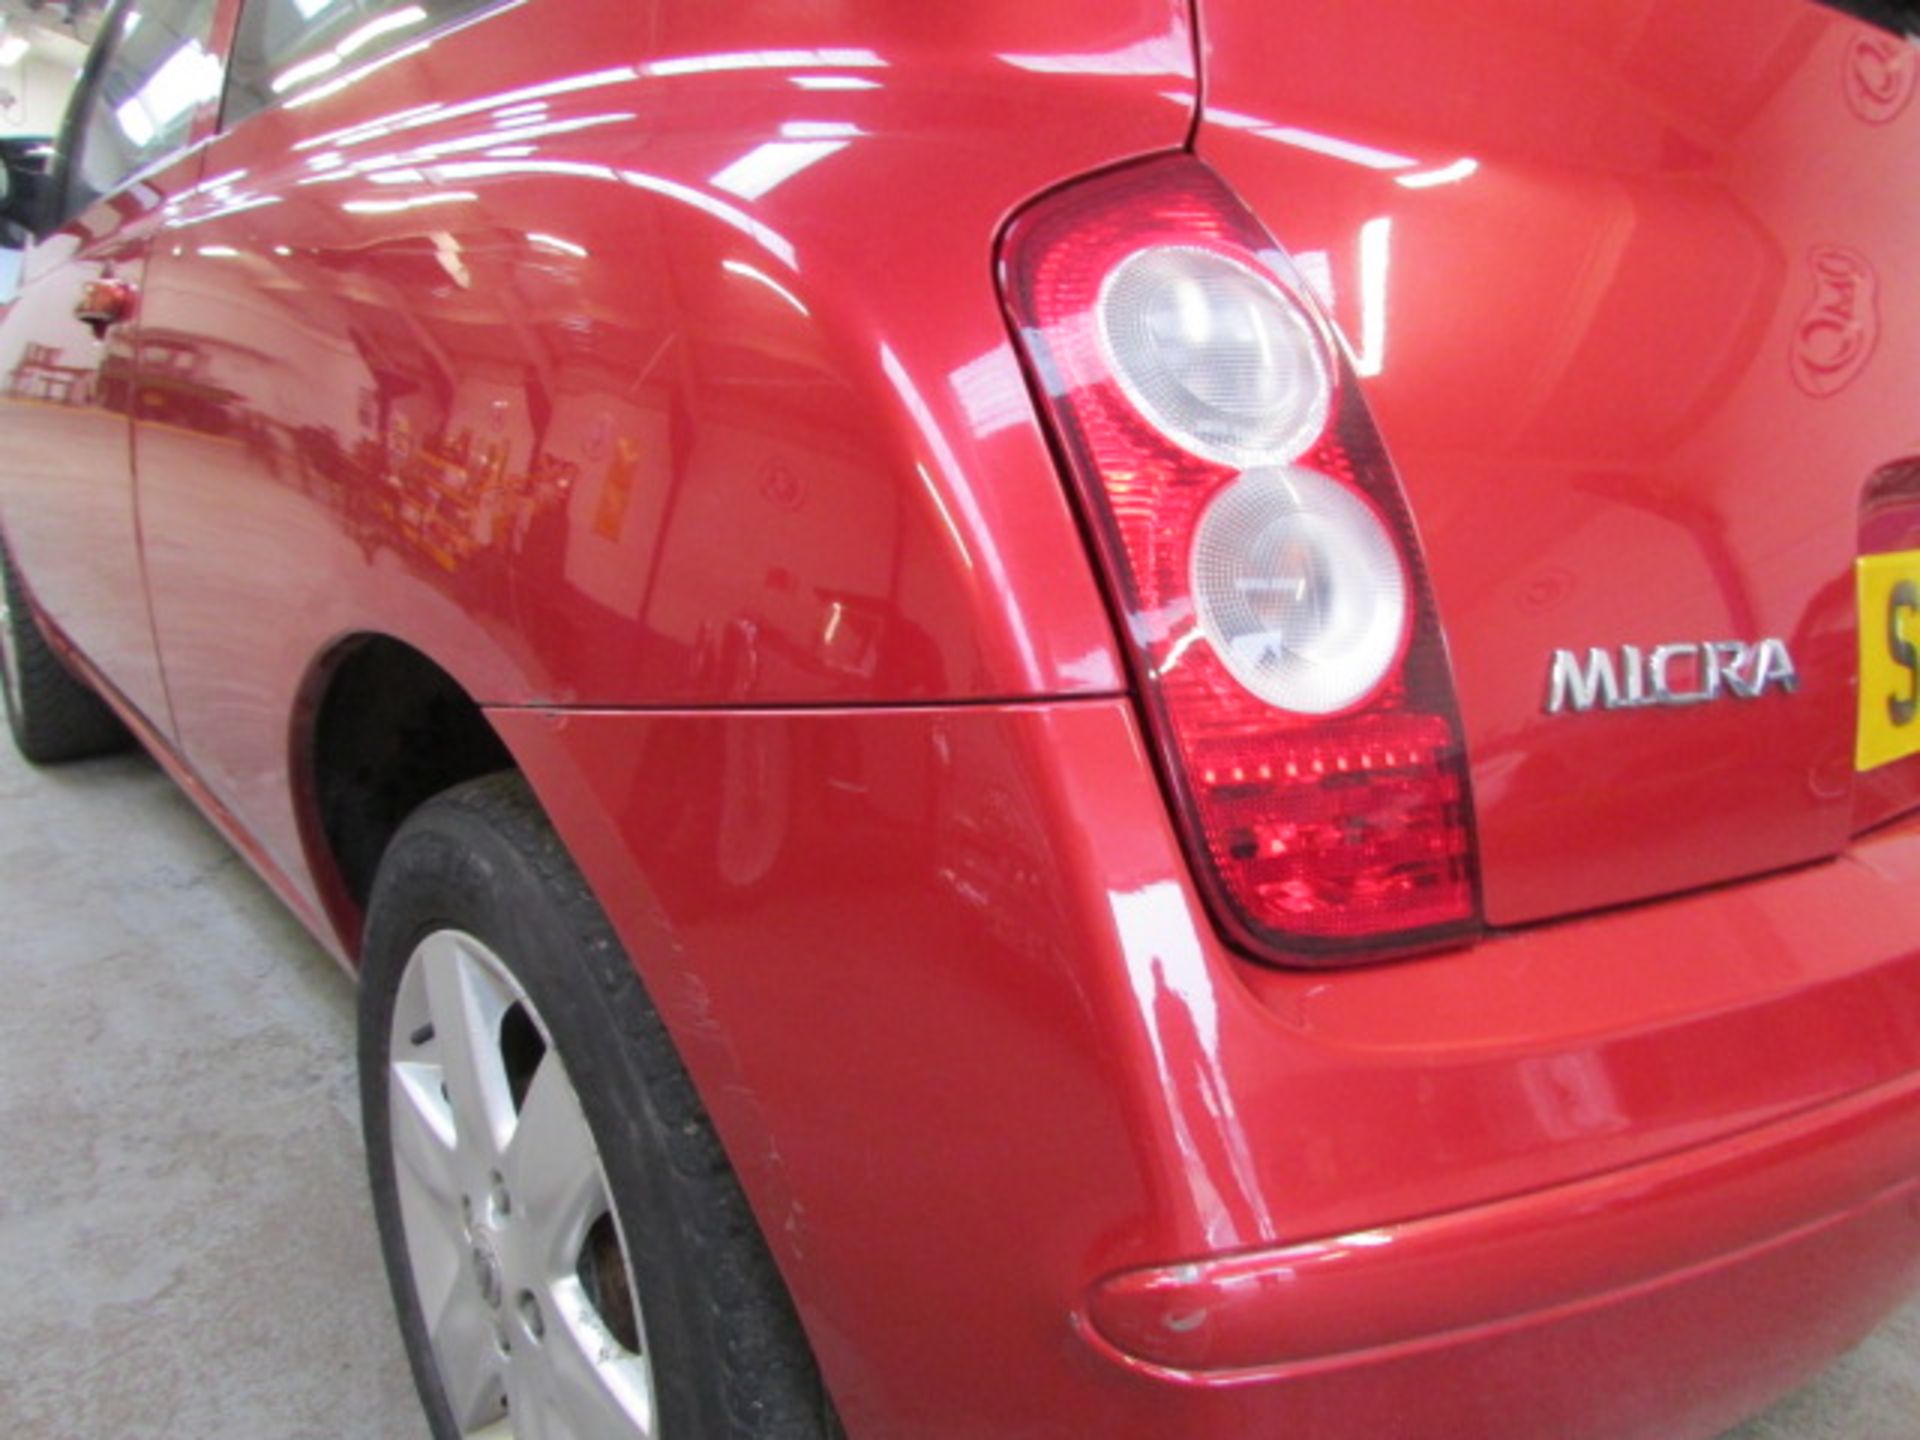 57 07 Nissan Micra Spirita - Image 3 of 14